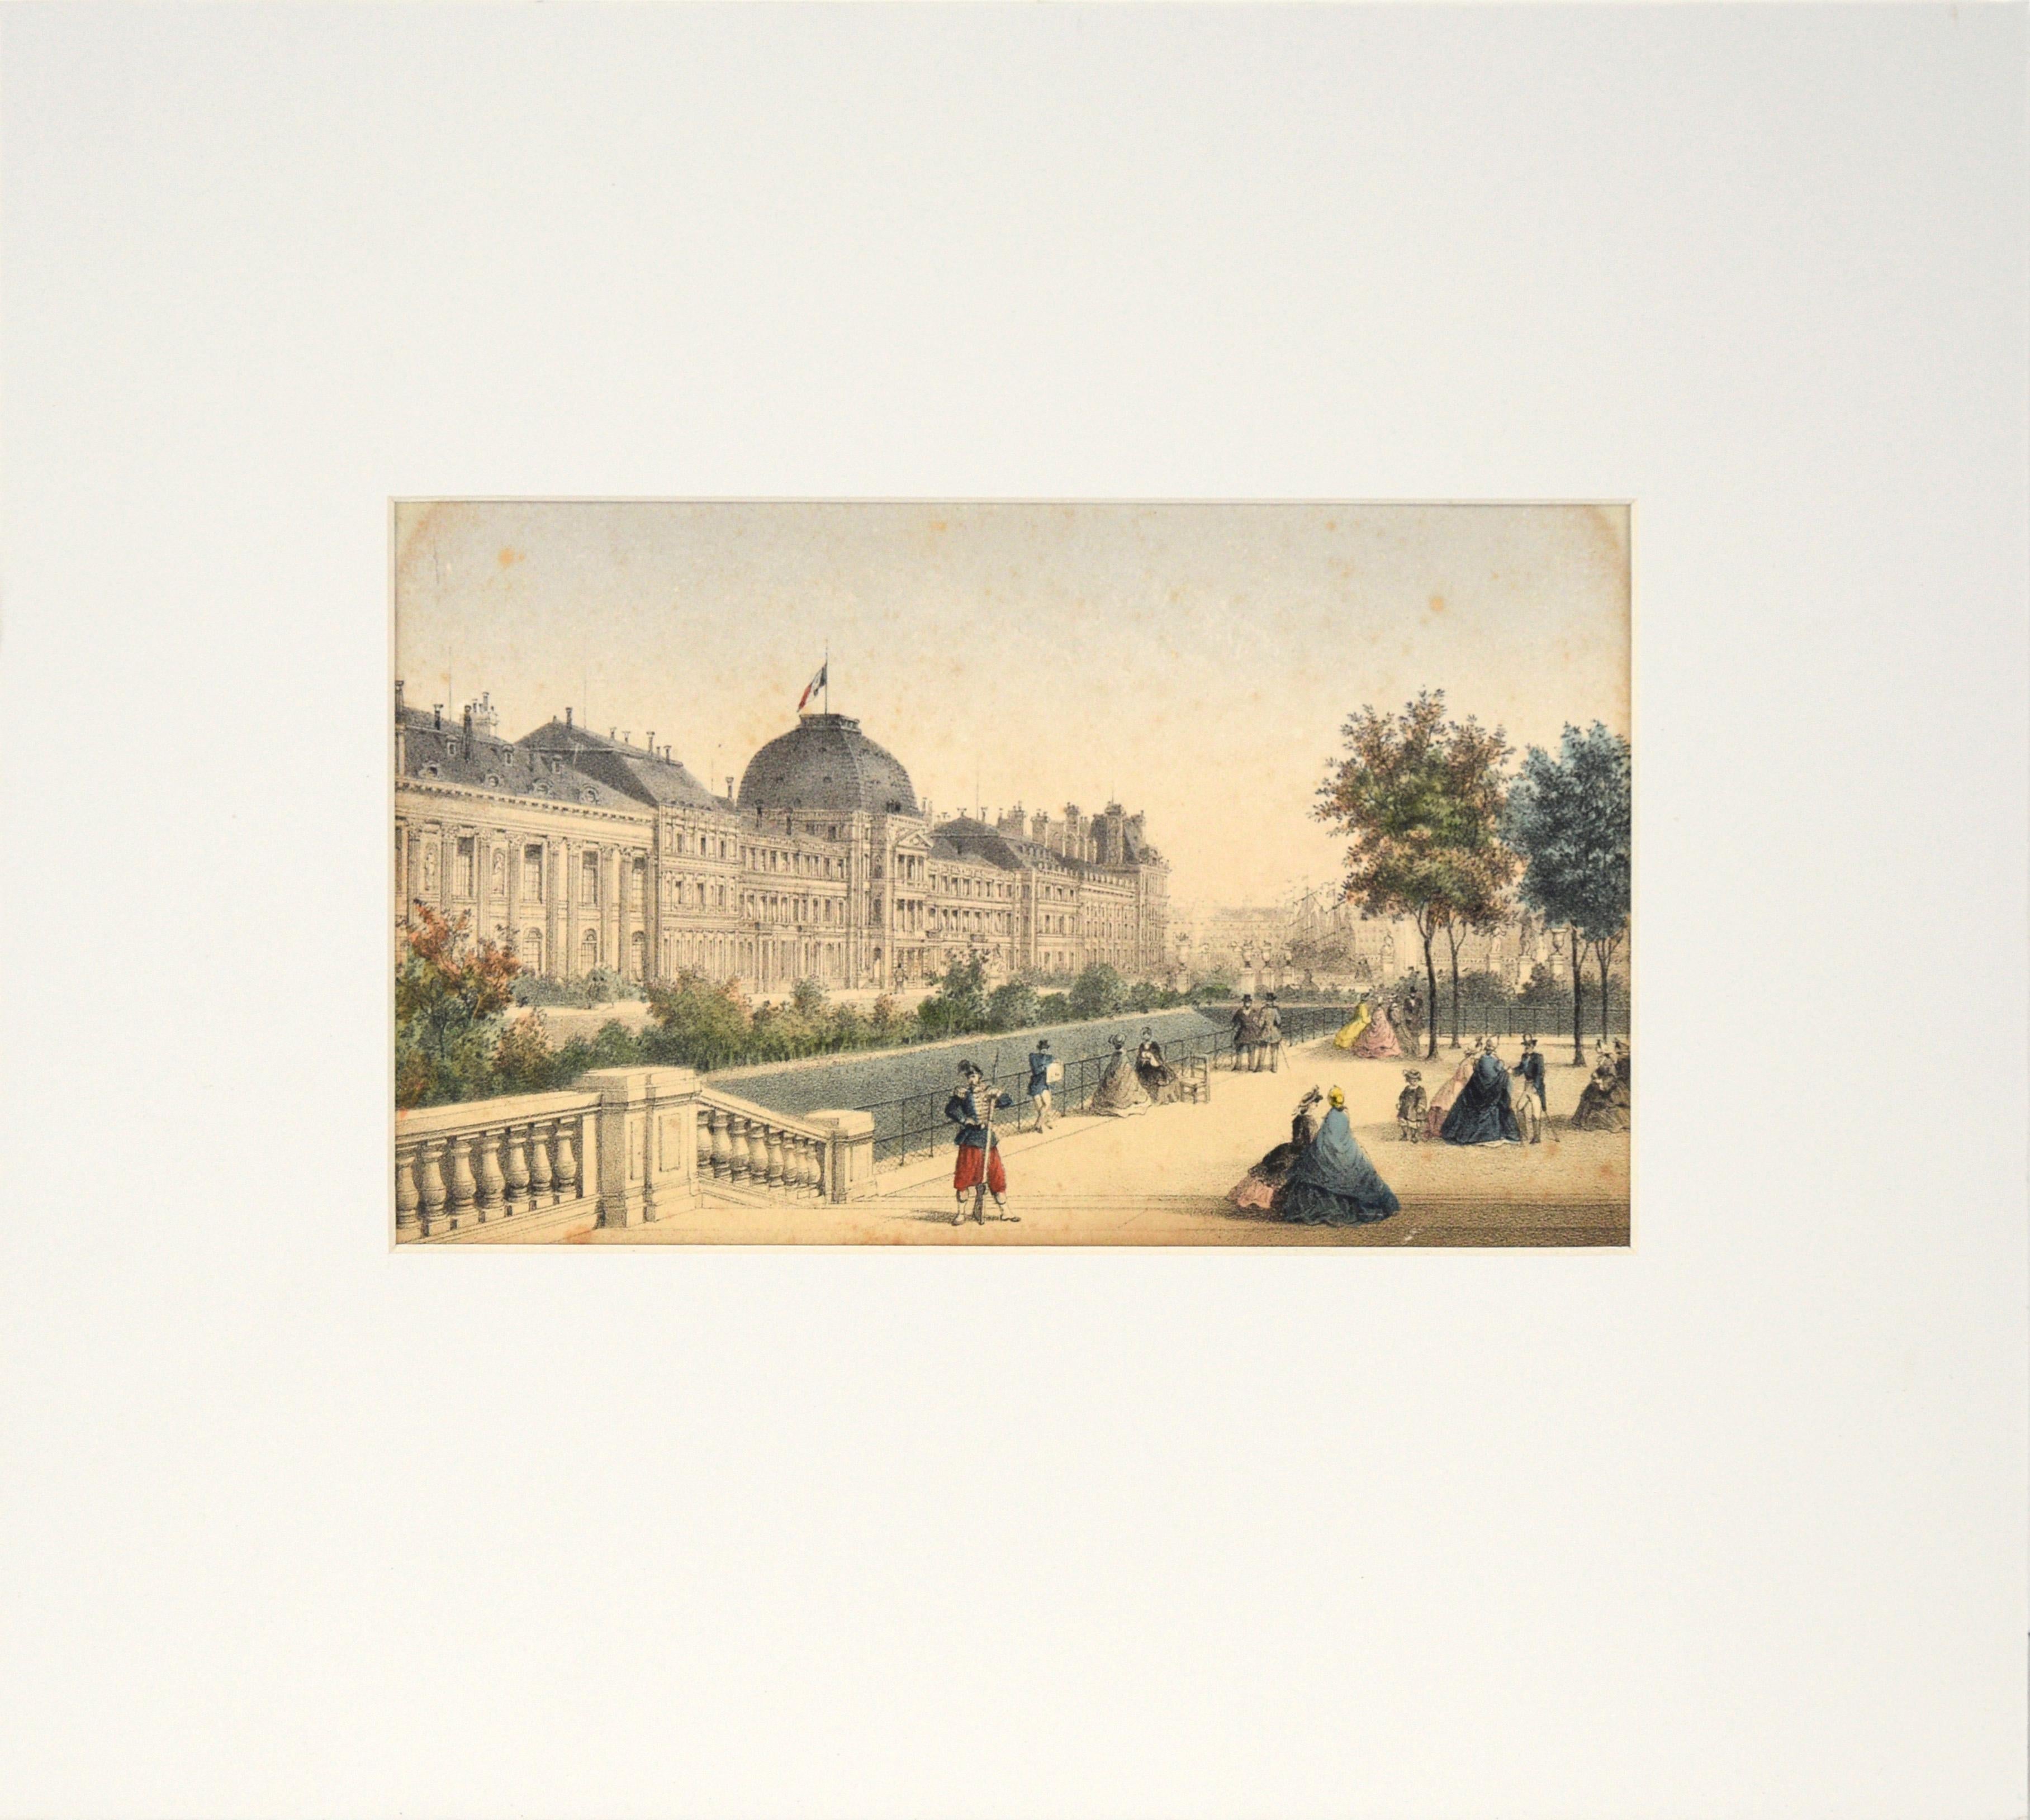 Rose-Joseph Lemercier  Landscape Print - Les Tuileries, Paris - Hand Colored Lithograph 1845-1860